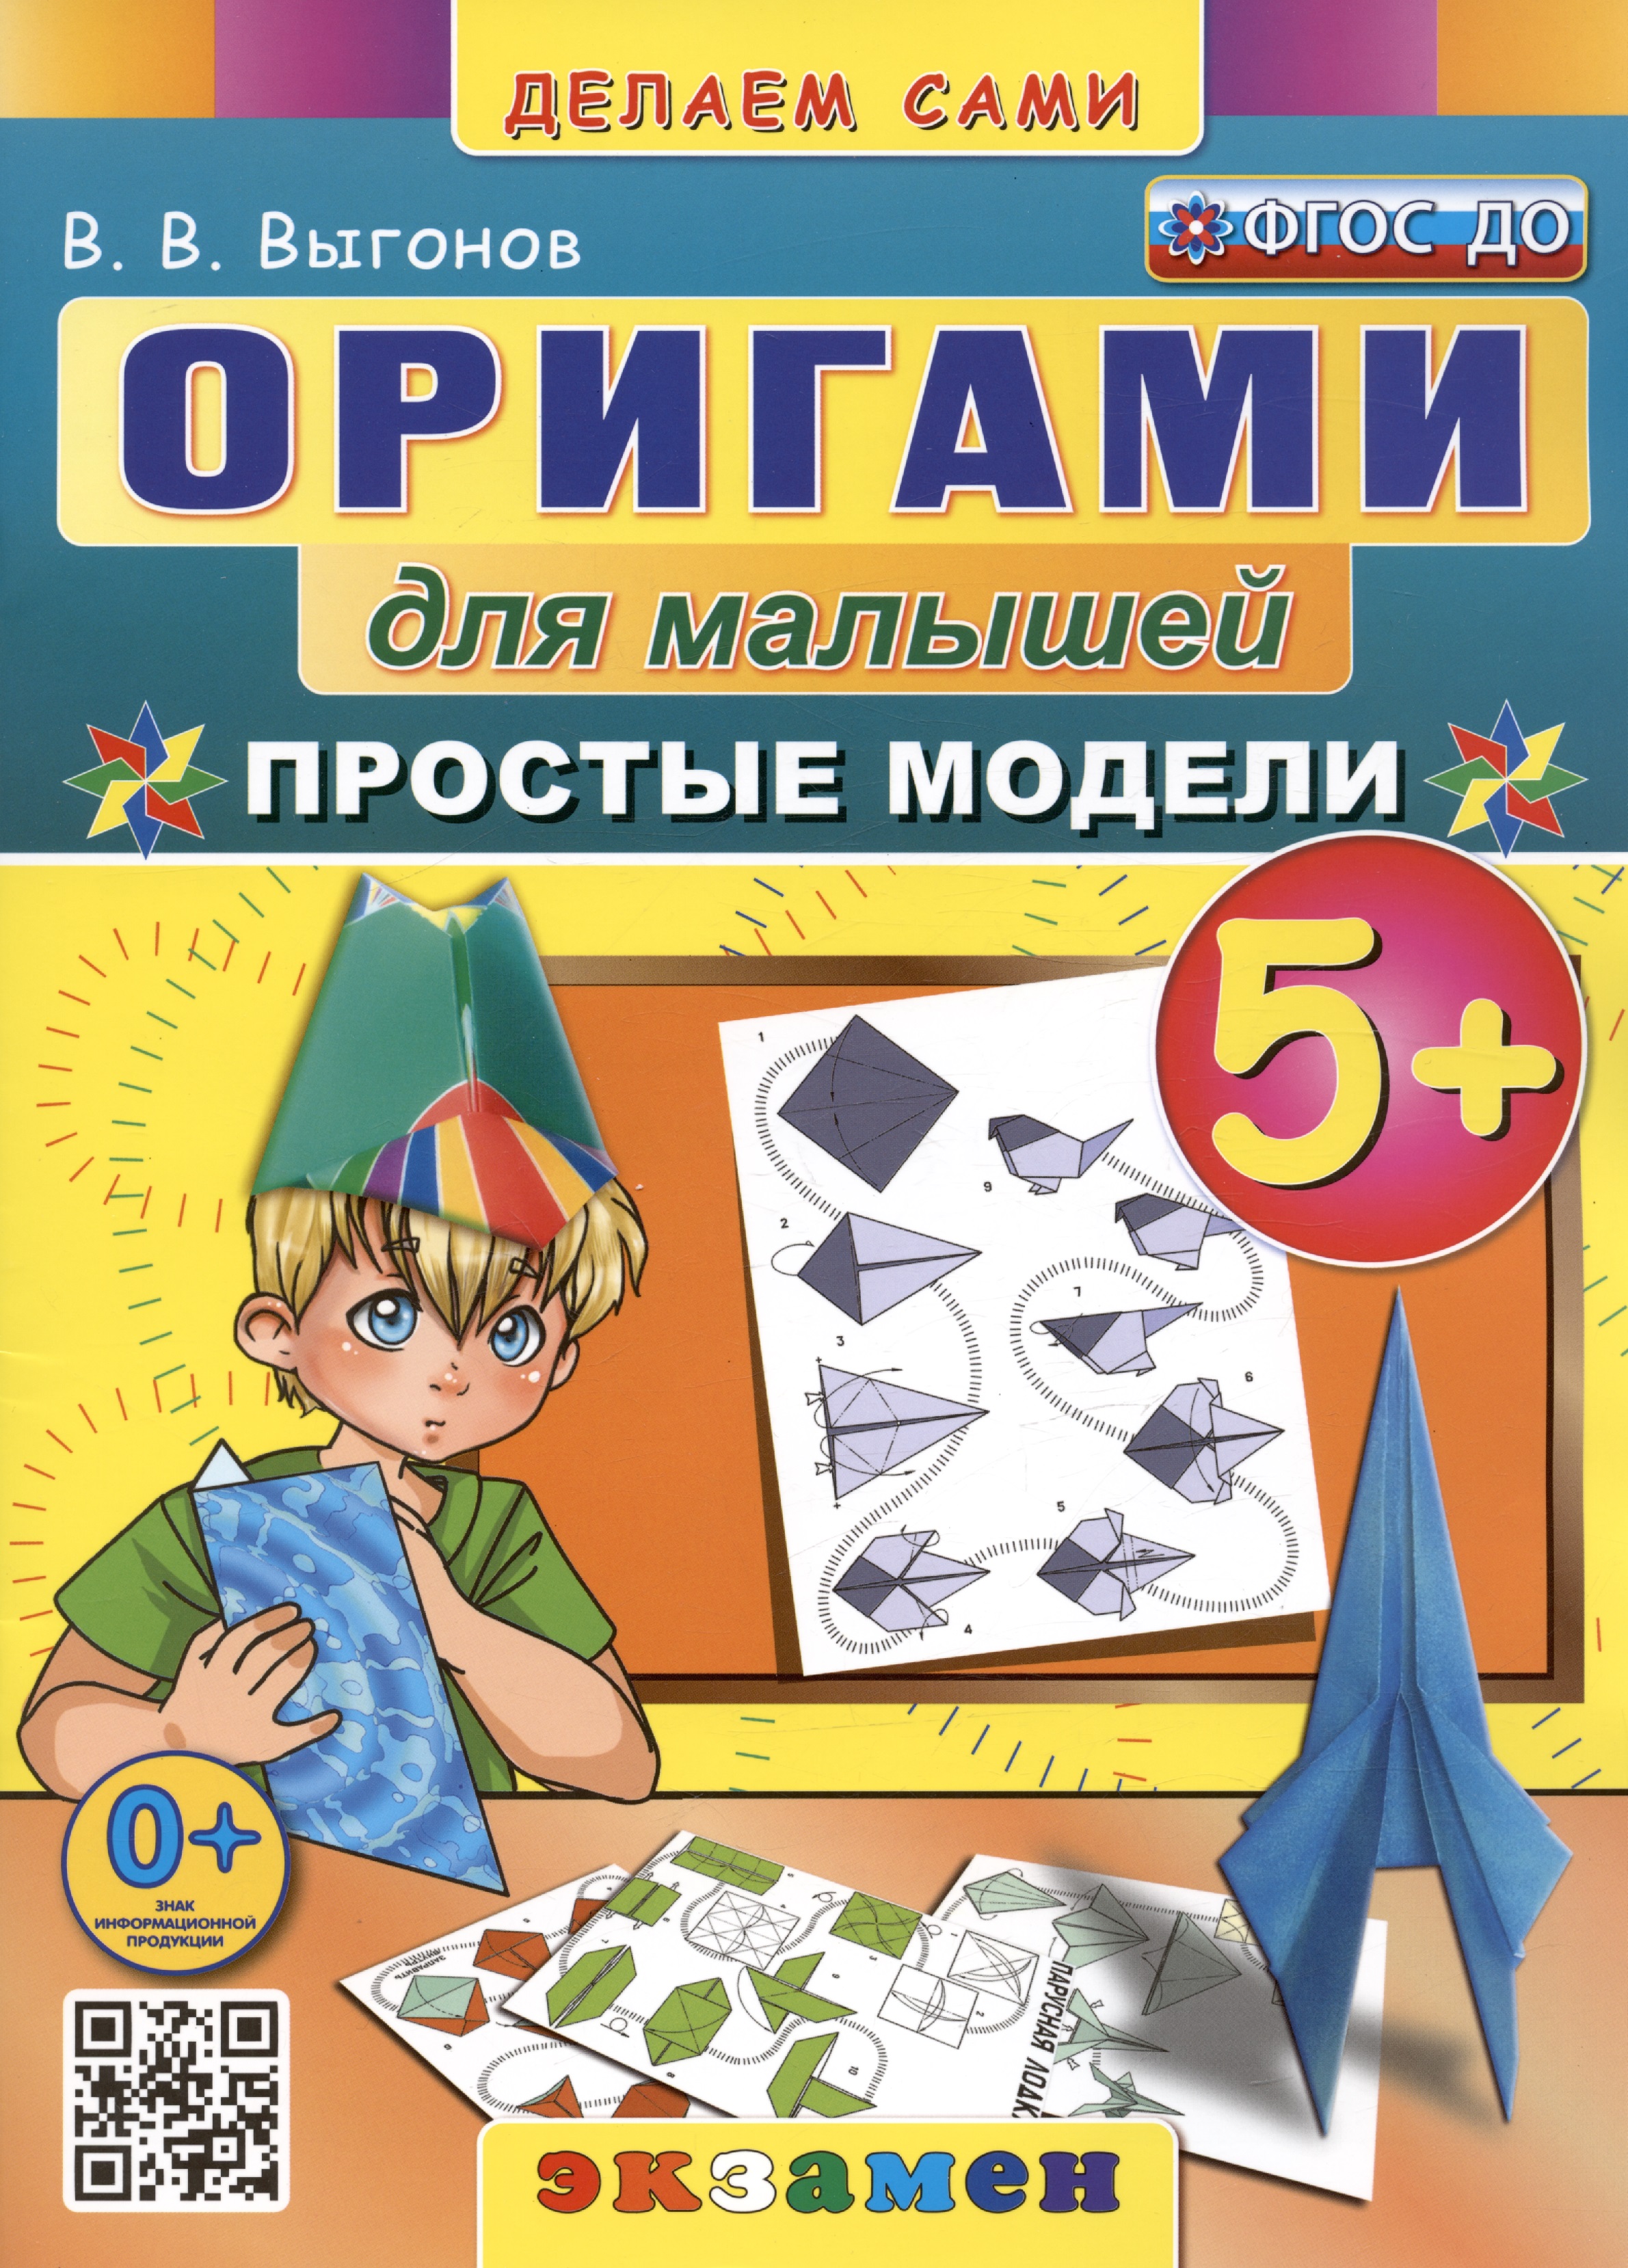 Выгонов Виктор Викторович Оригами для малышей. Простые модели. 5+